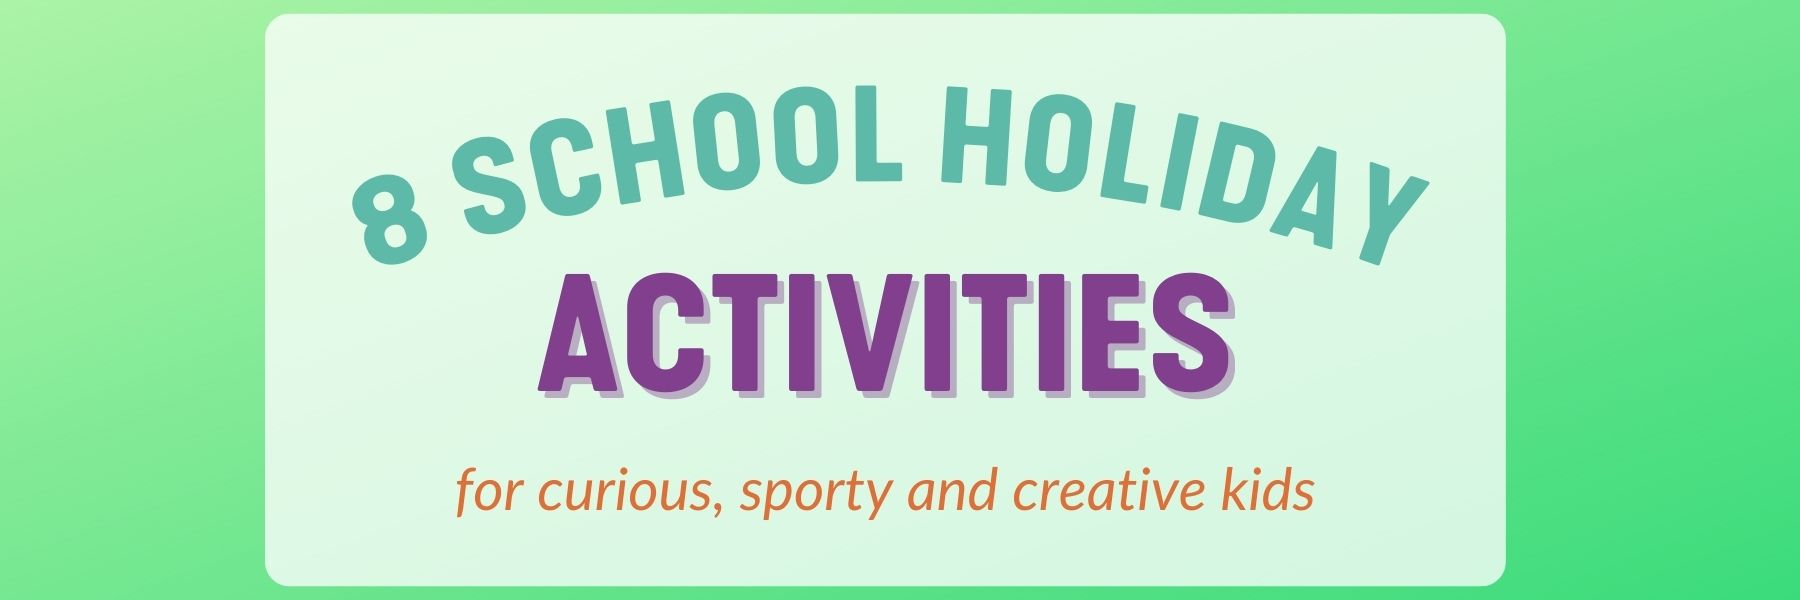 school holidays activities for kids